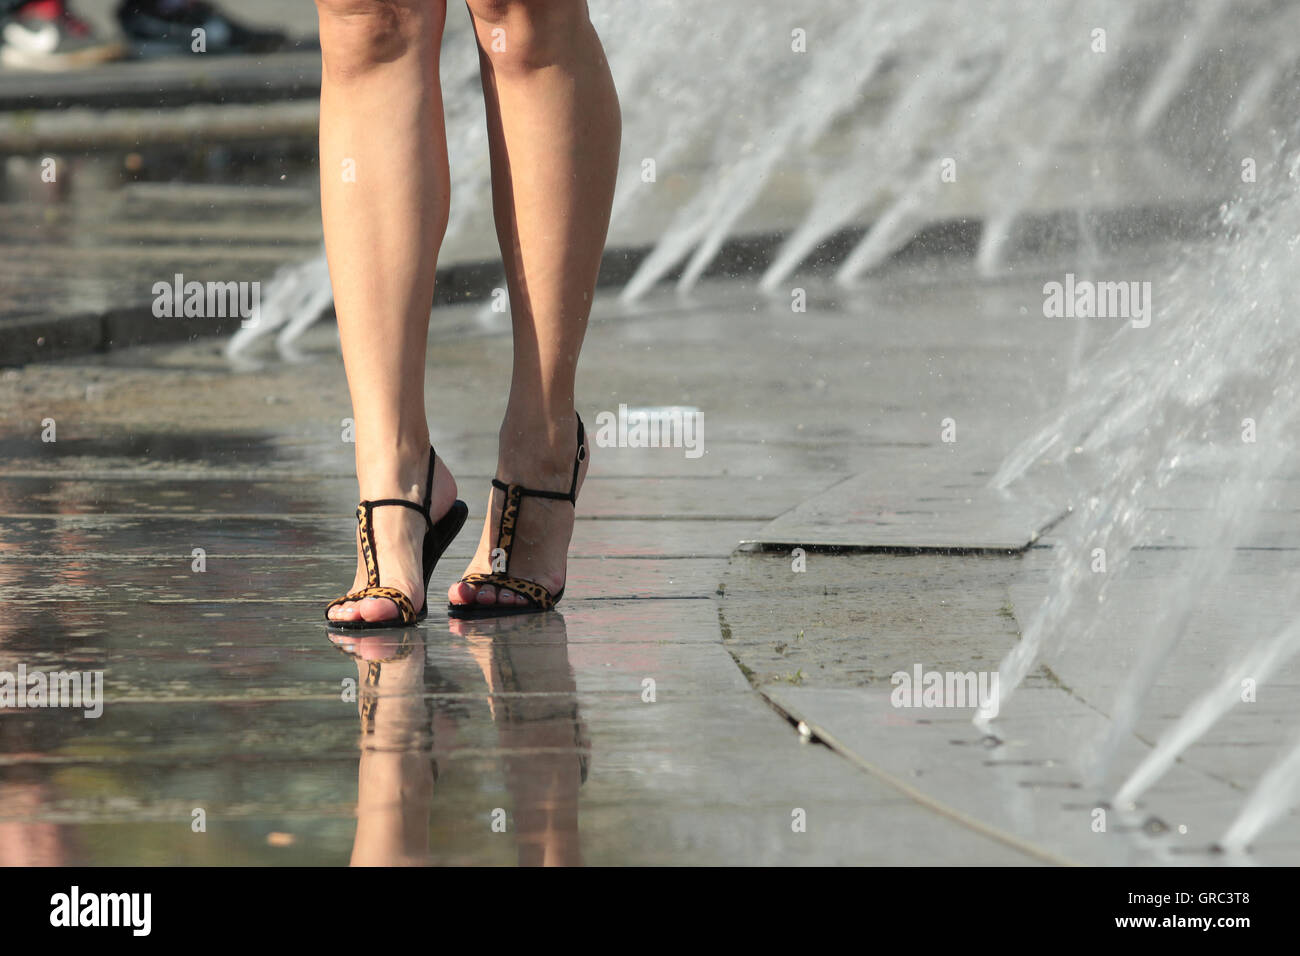 Mujer de piernas en un Fountaun durante la ola de calor Foto de stock